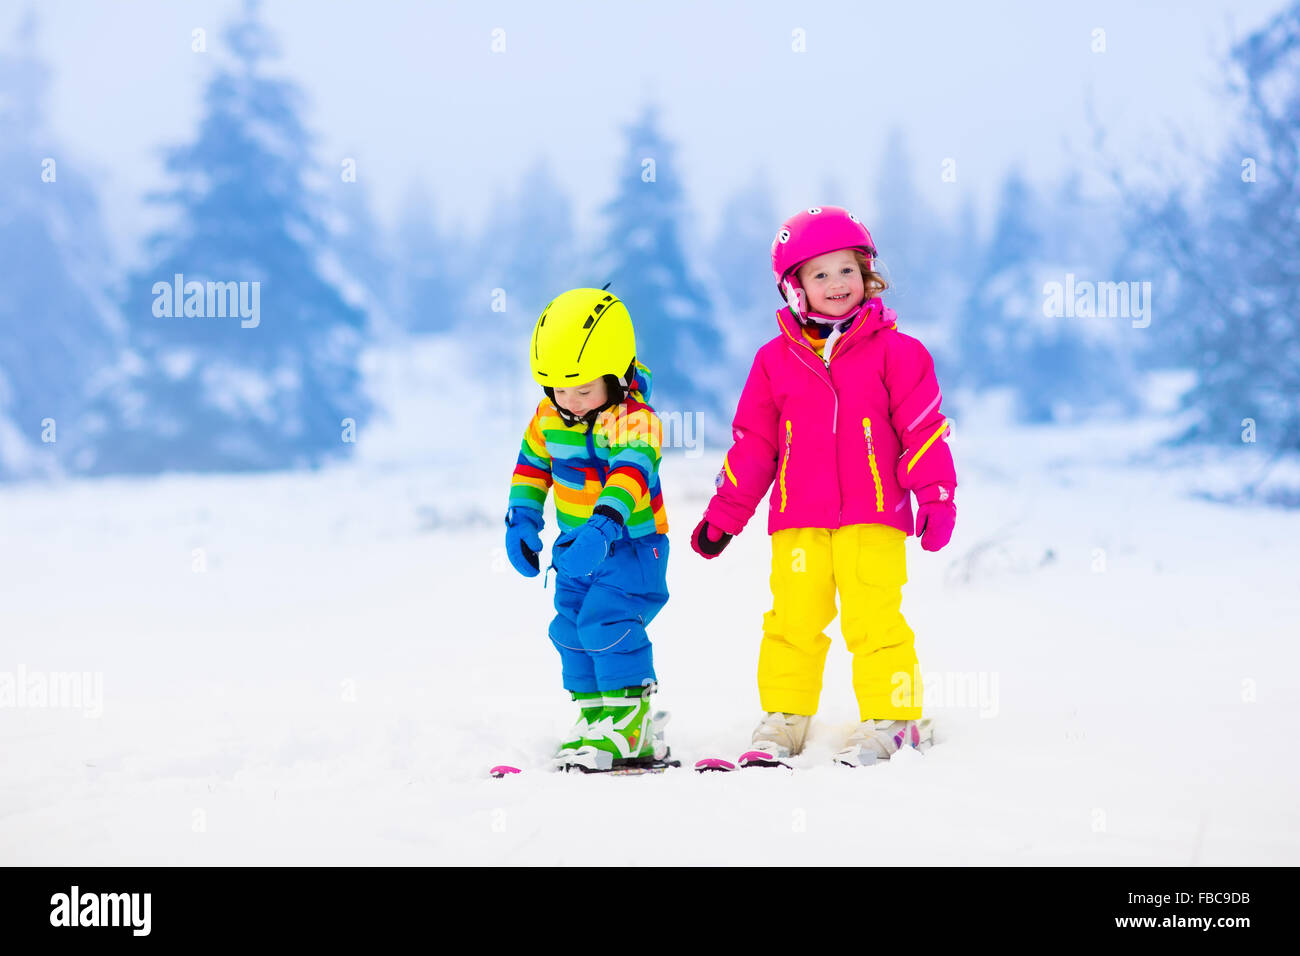 Los niños de esquí en las montañas. Niños Niño en un colorido traje y casco de seguridad aprendiendo a esquiar. Deportes de invierno para la familia Foto de stock